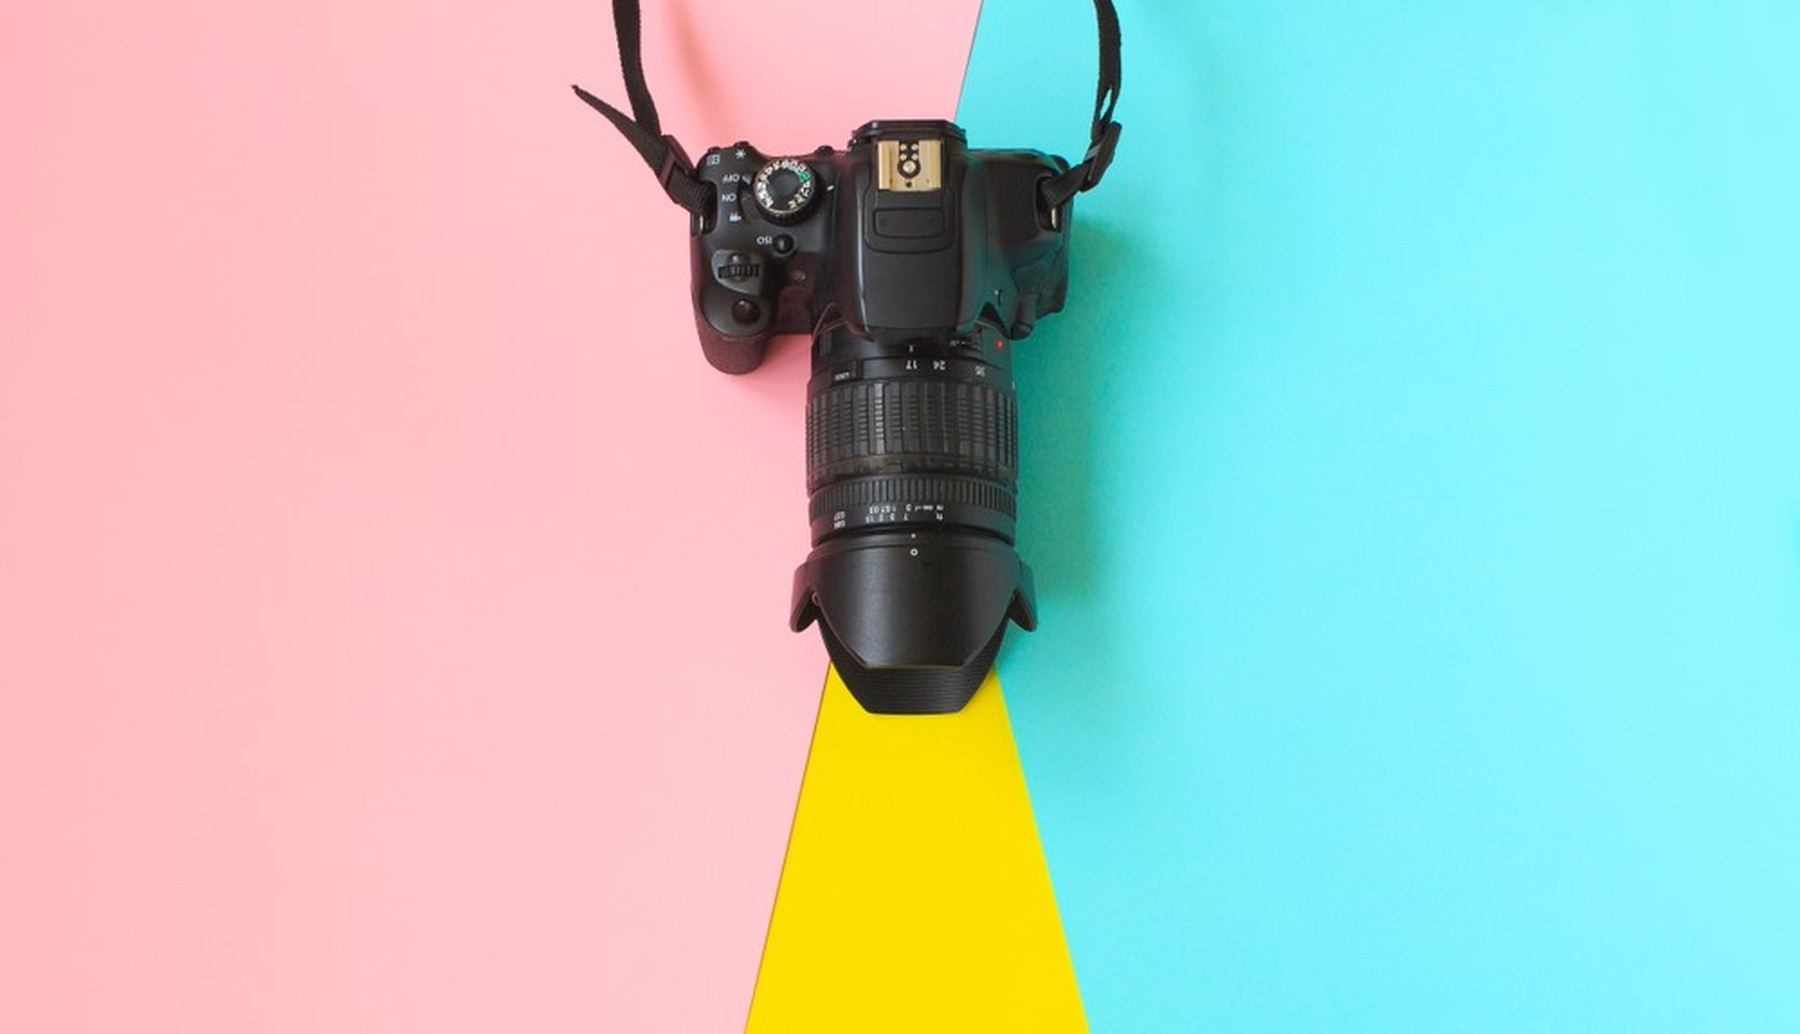 Plano cenital de una cámara réflex sobre un fondo rosa y azul. Del objetivo sale como un rayo de luz amarillo.